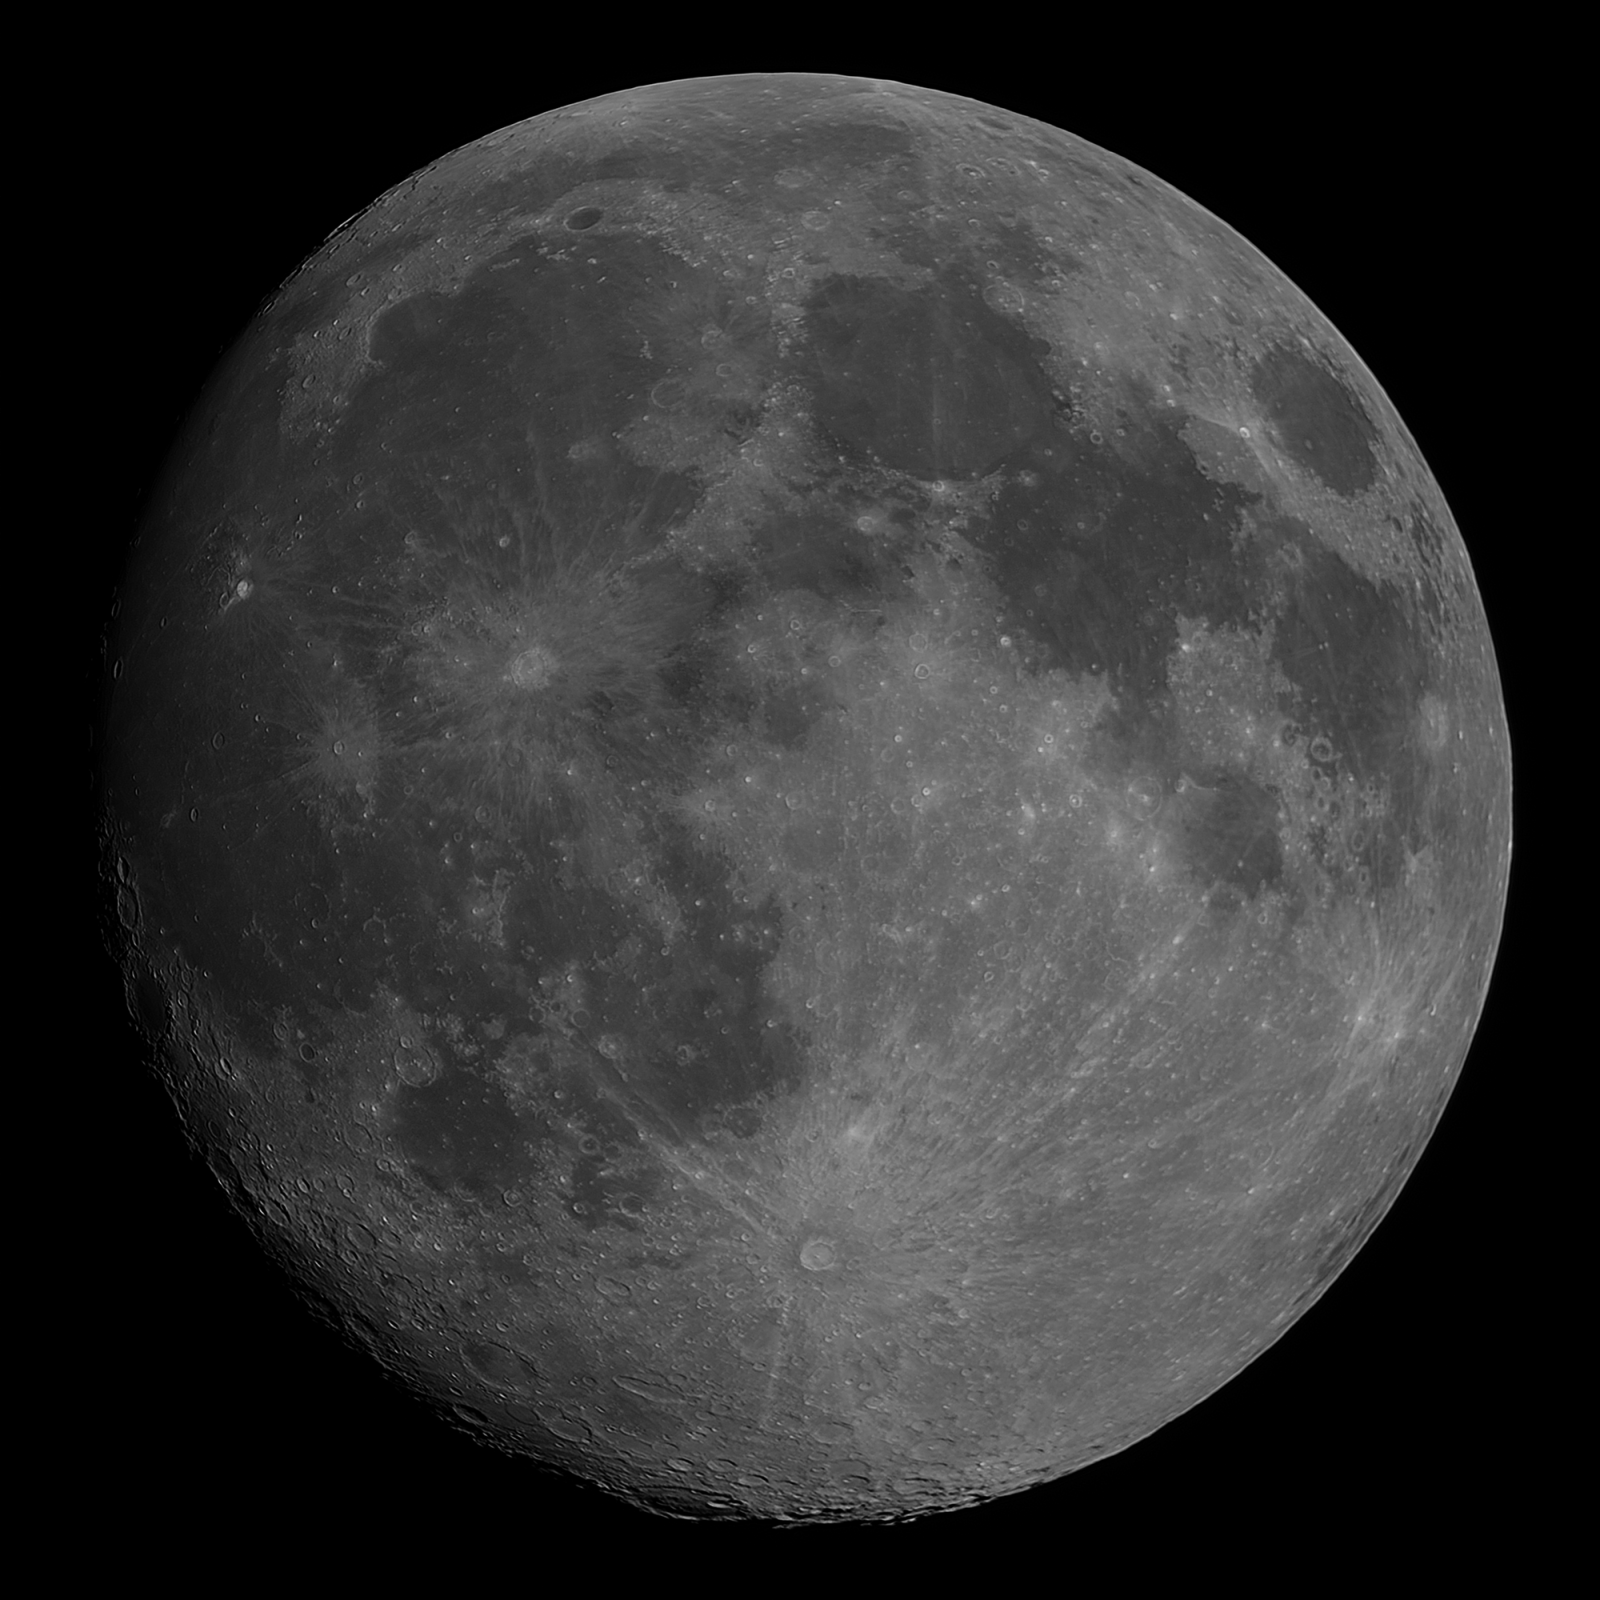 moon-2022-02-14-bw.thumb.png.002334fd88e5dea84c40457350574ddb.png